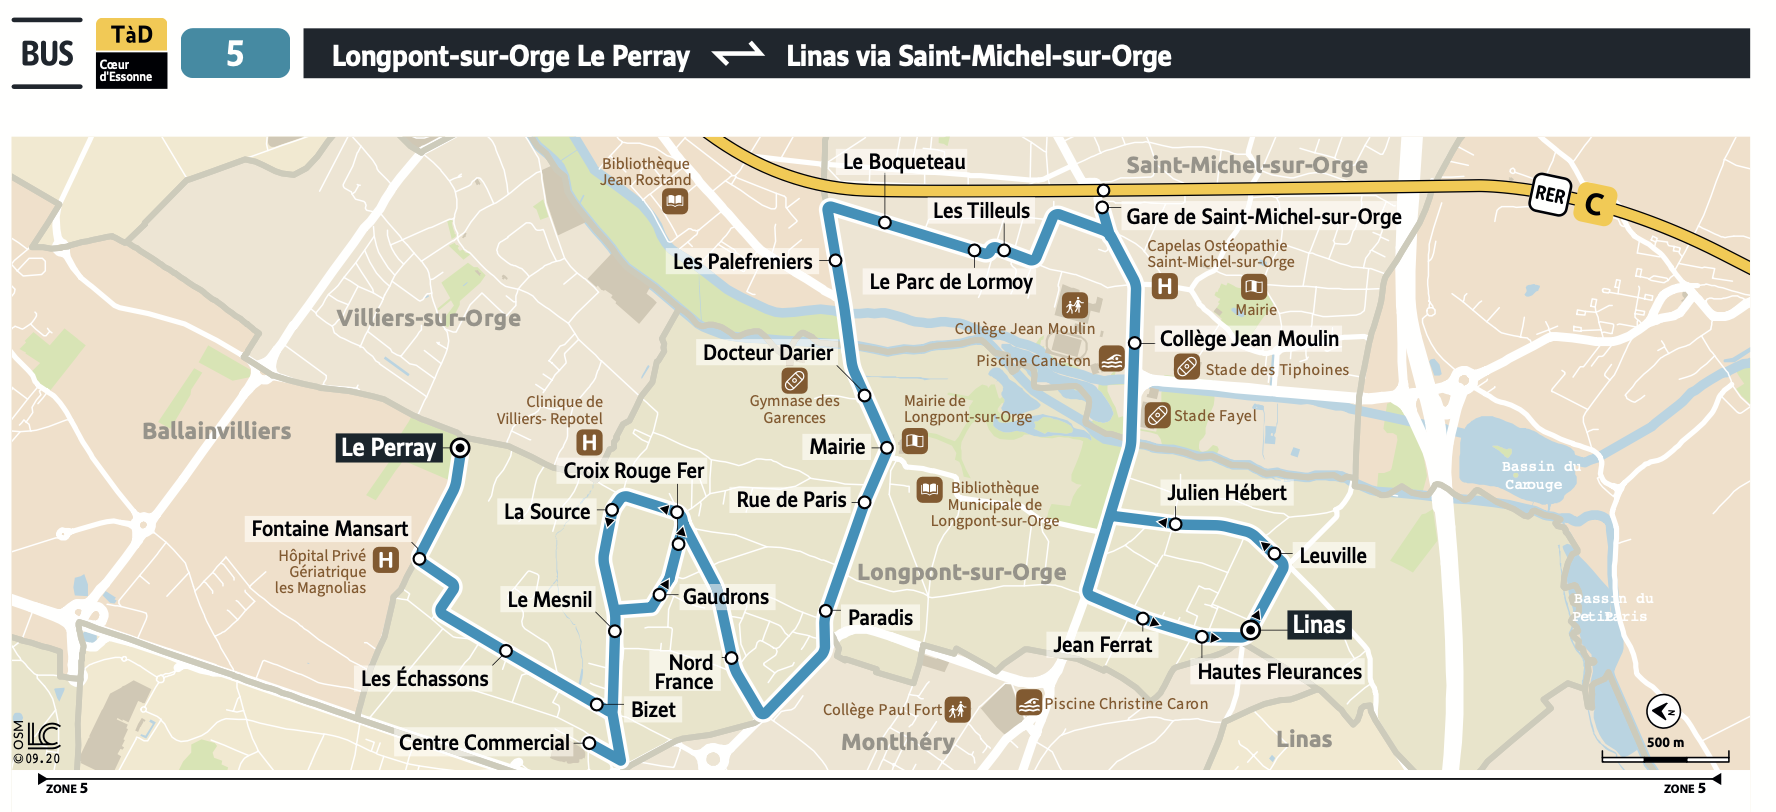 Plan du territoire de Coeur d'Essonne (Zone 5) desservi par le Transport à la Demande.